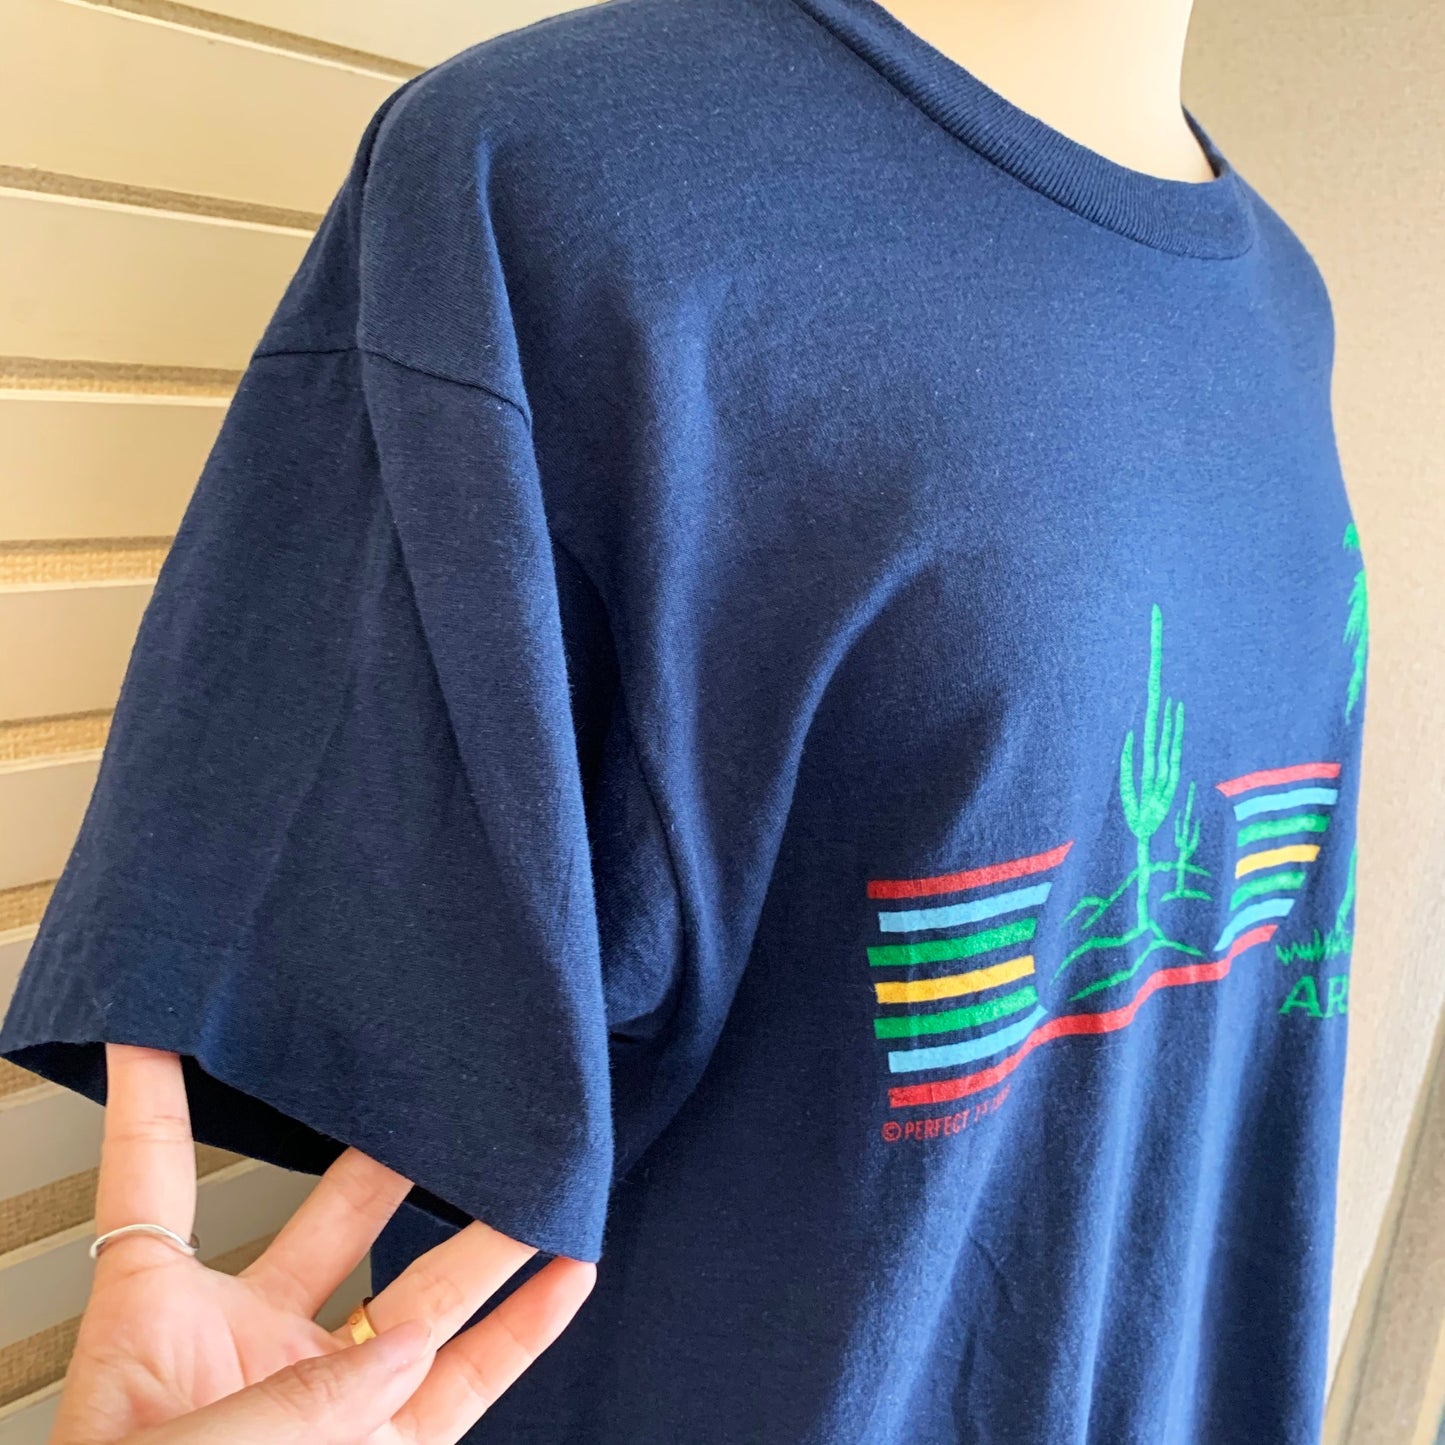 【vintage】80's ARIZONA Tシャツ(men's L)